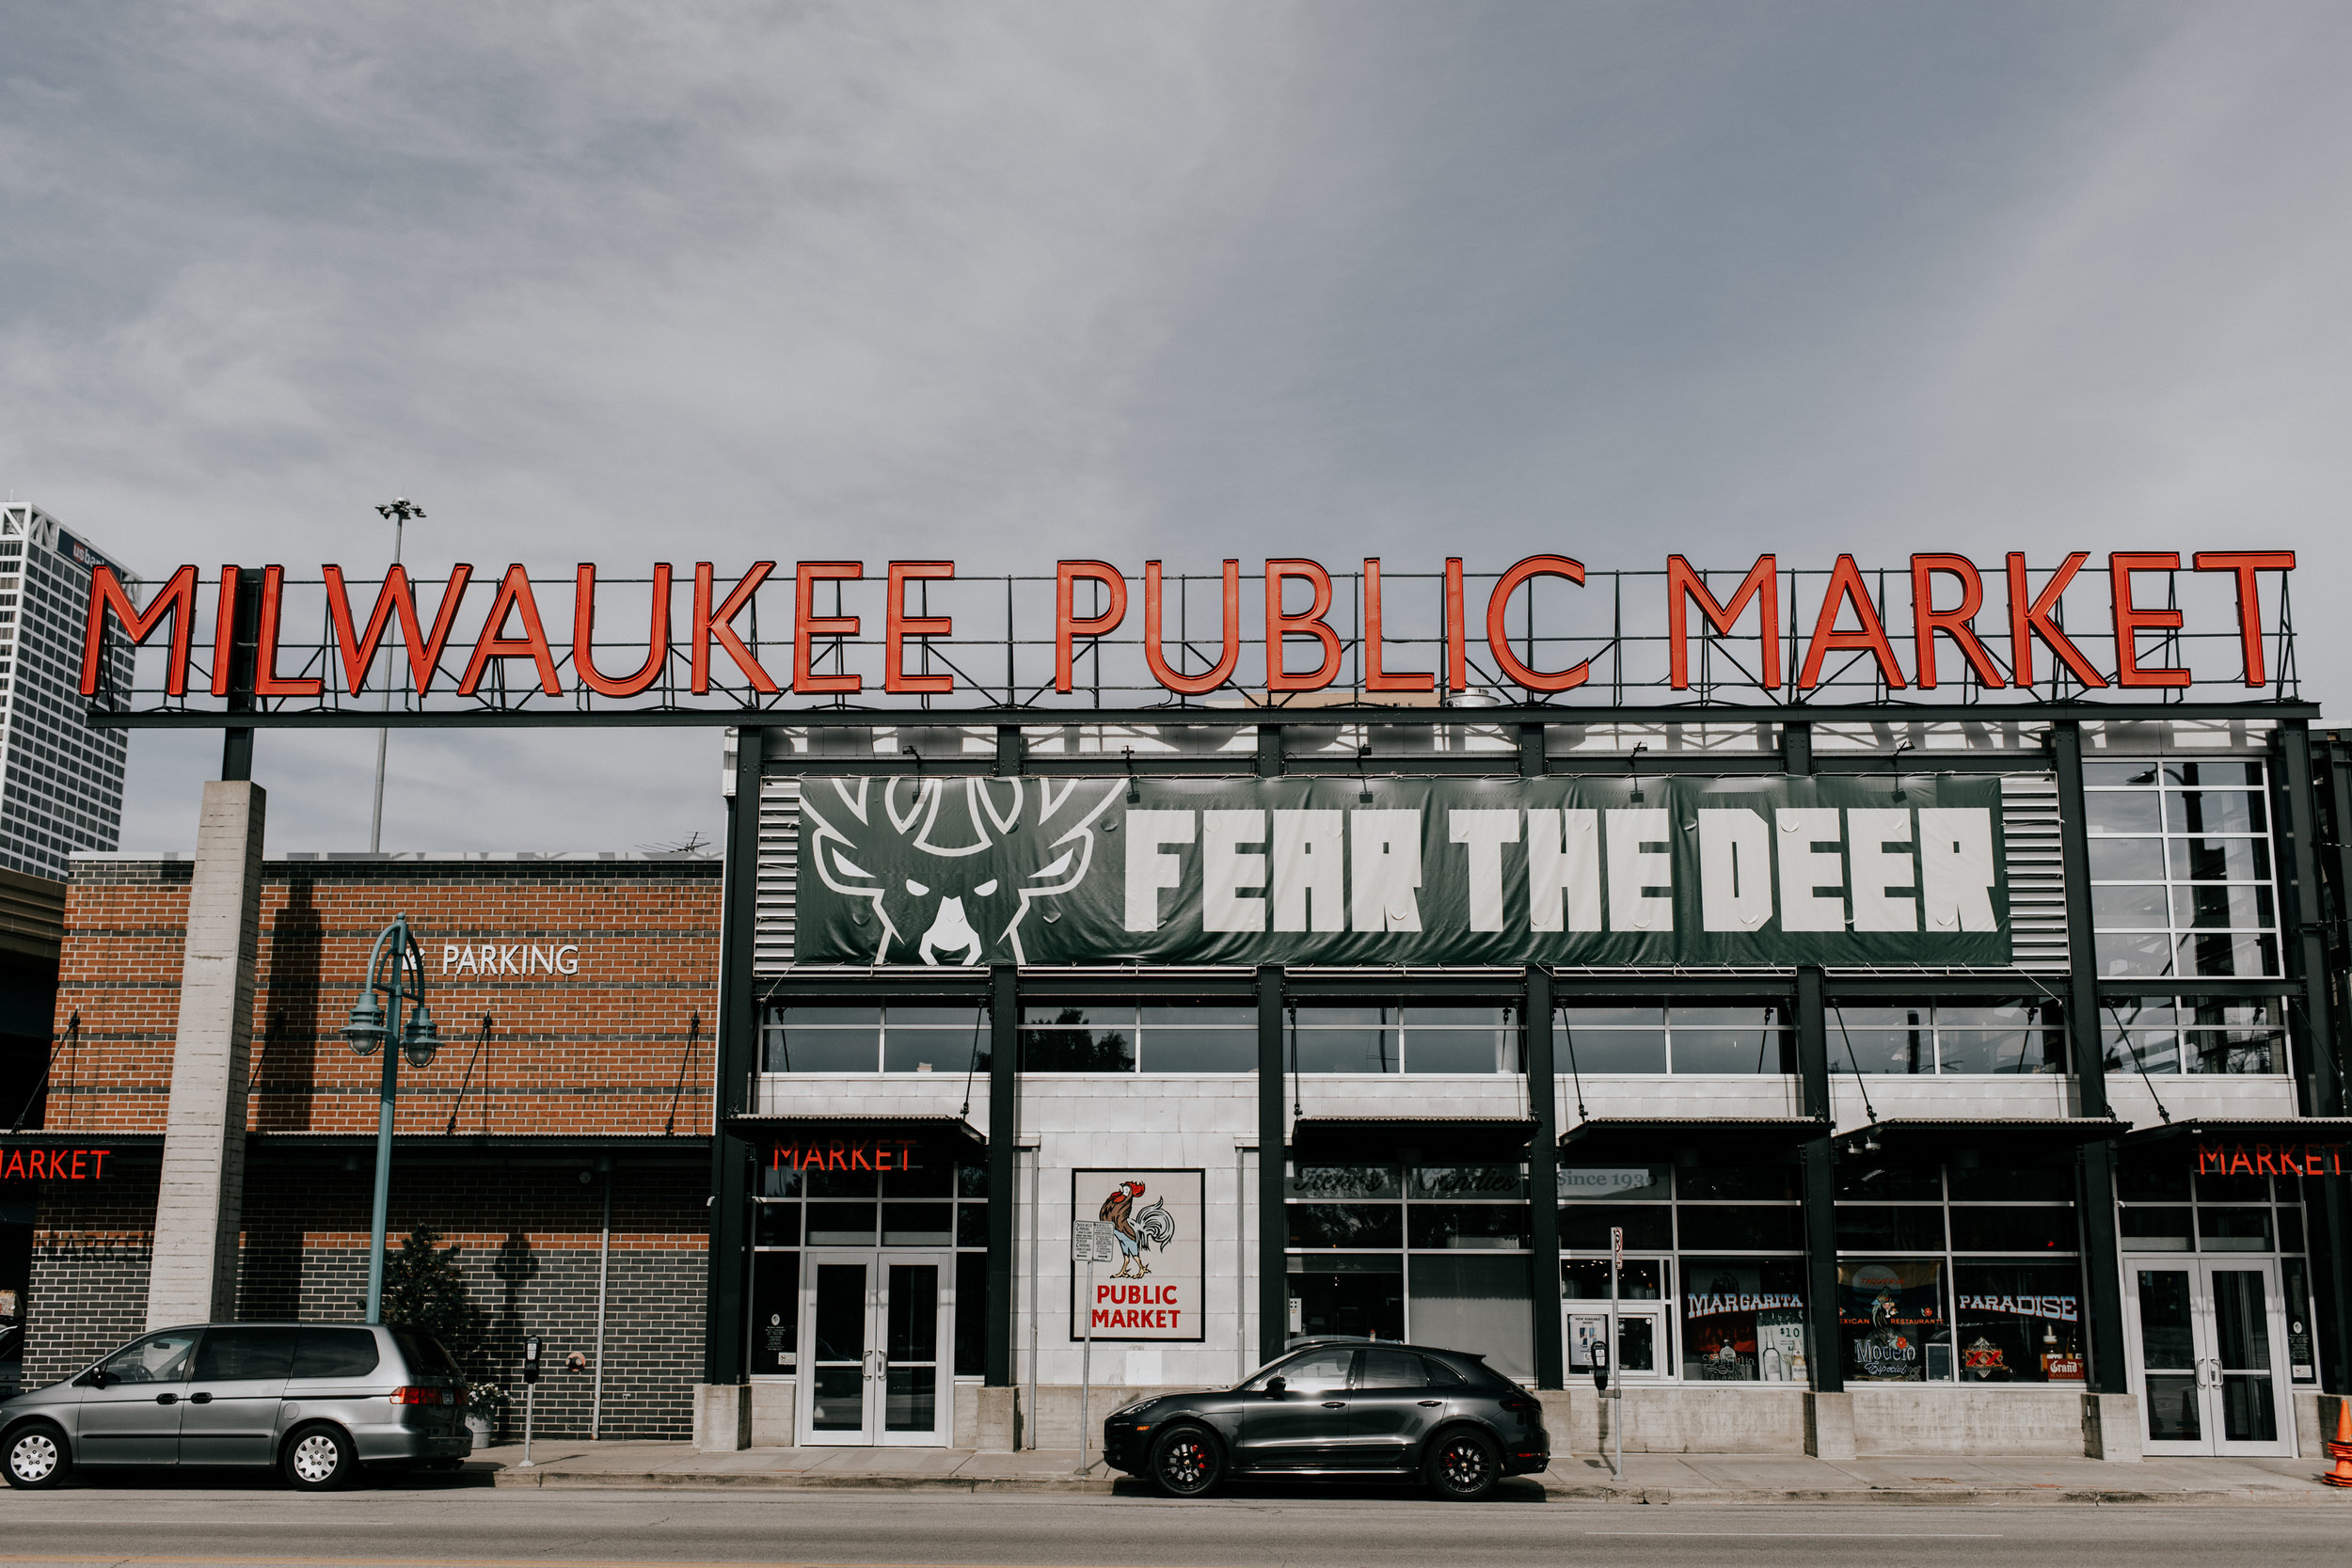 MilwaukeePublicMarket.jpg